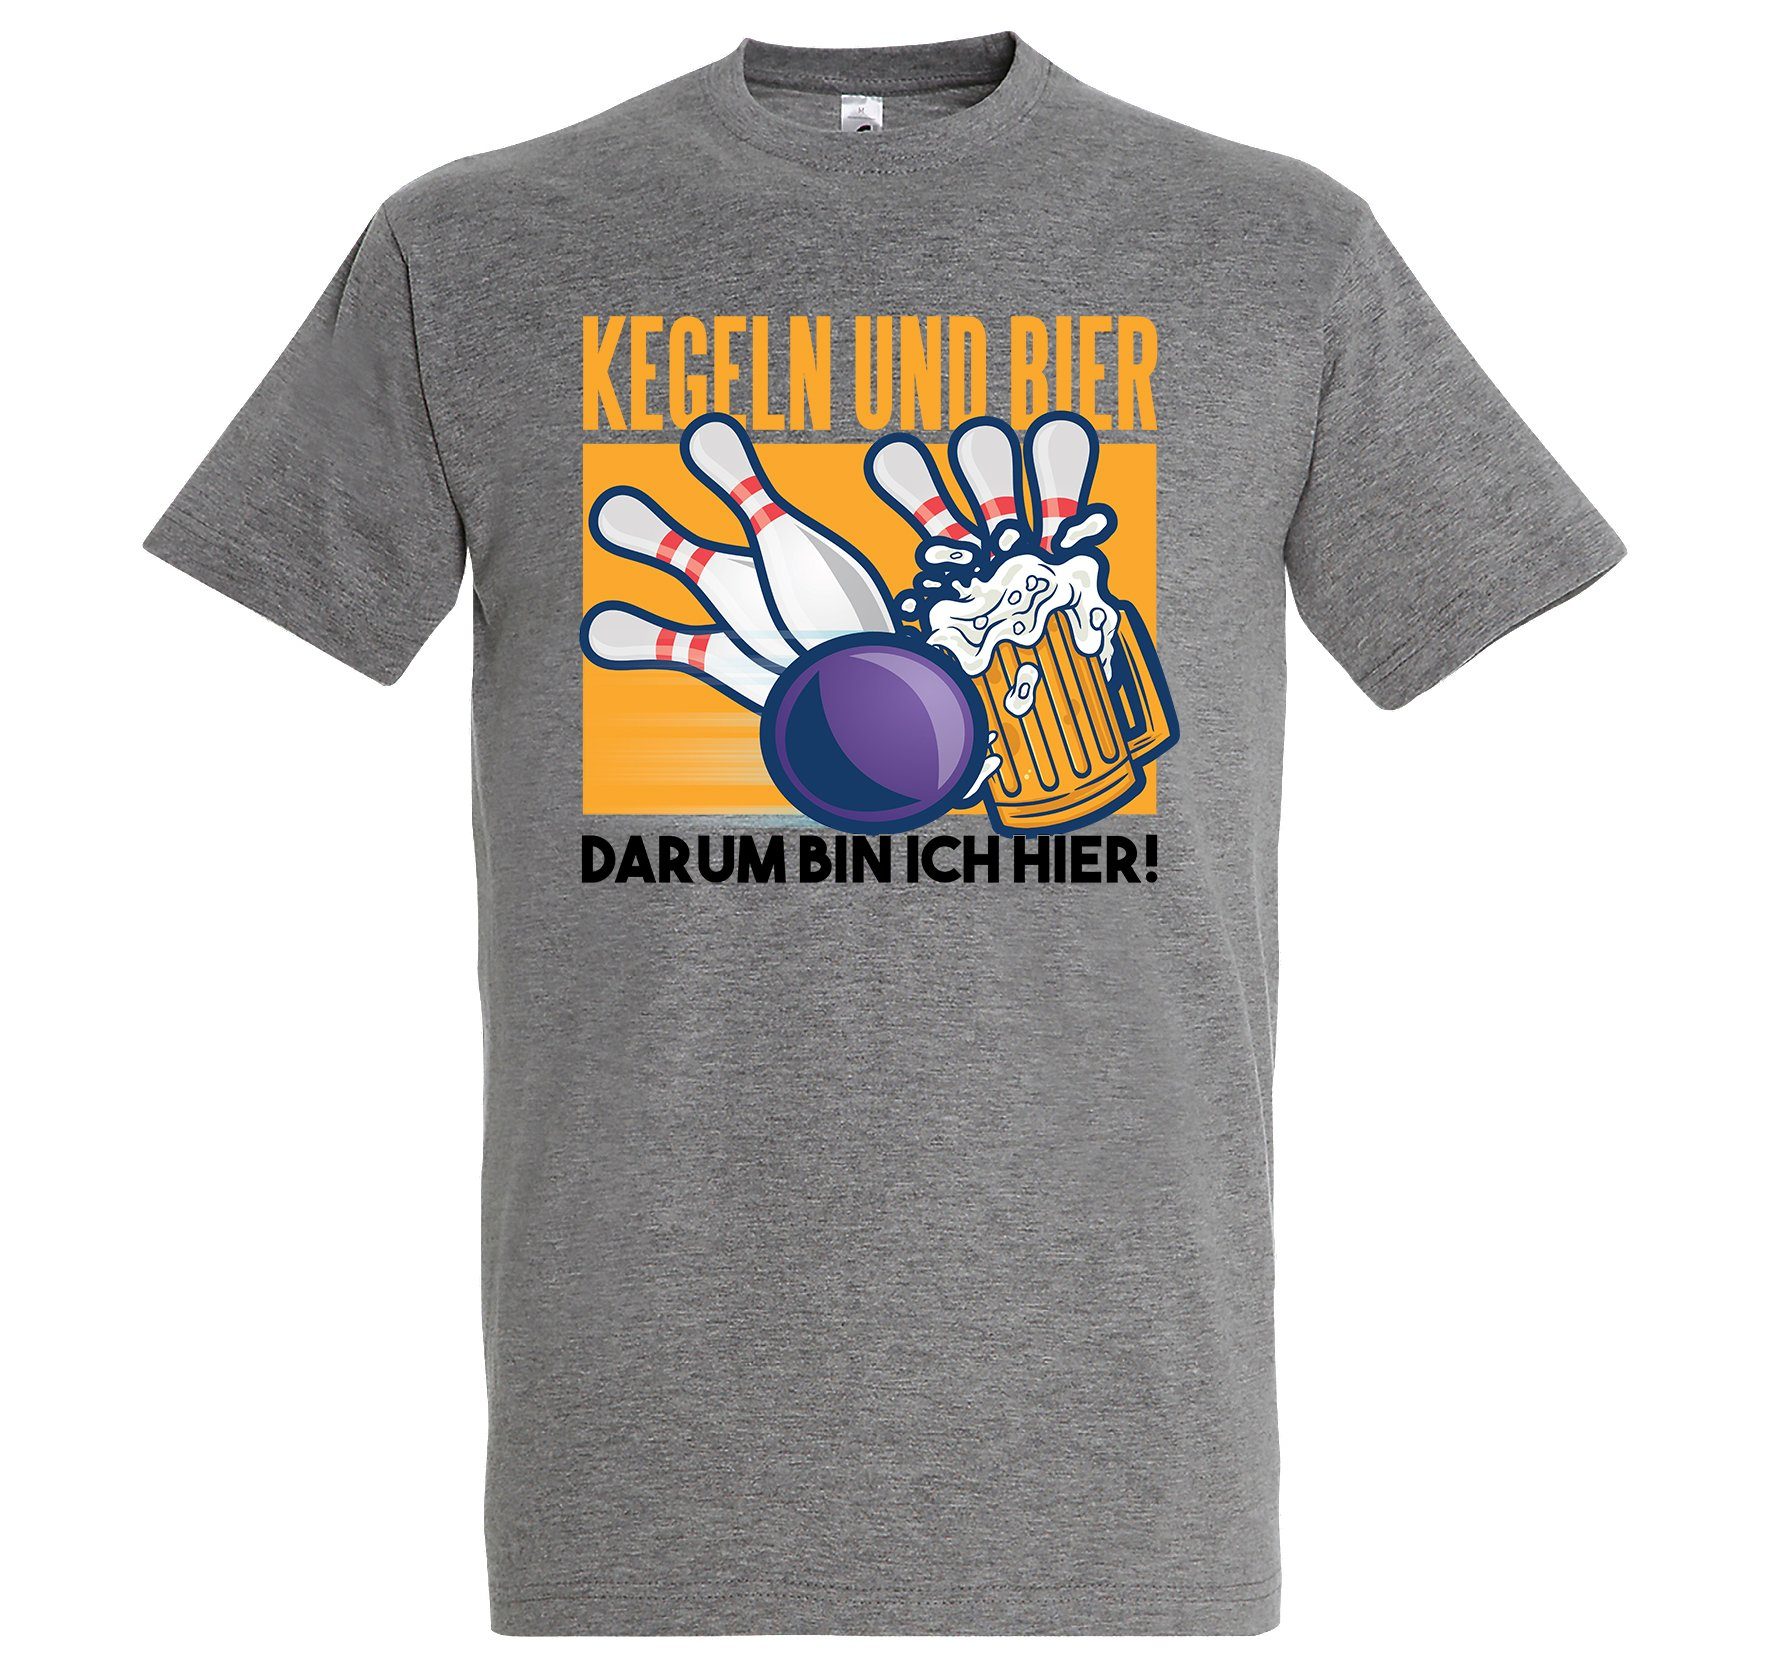 Youth Designz T-Shirt "Kegeln Und Bier, Darum Bin Ich Hier" Herren T-Shirt mit lustigem Frontprint Grau